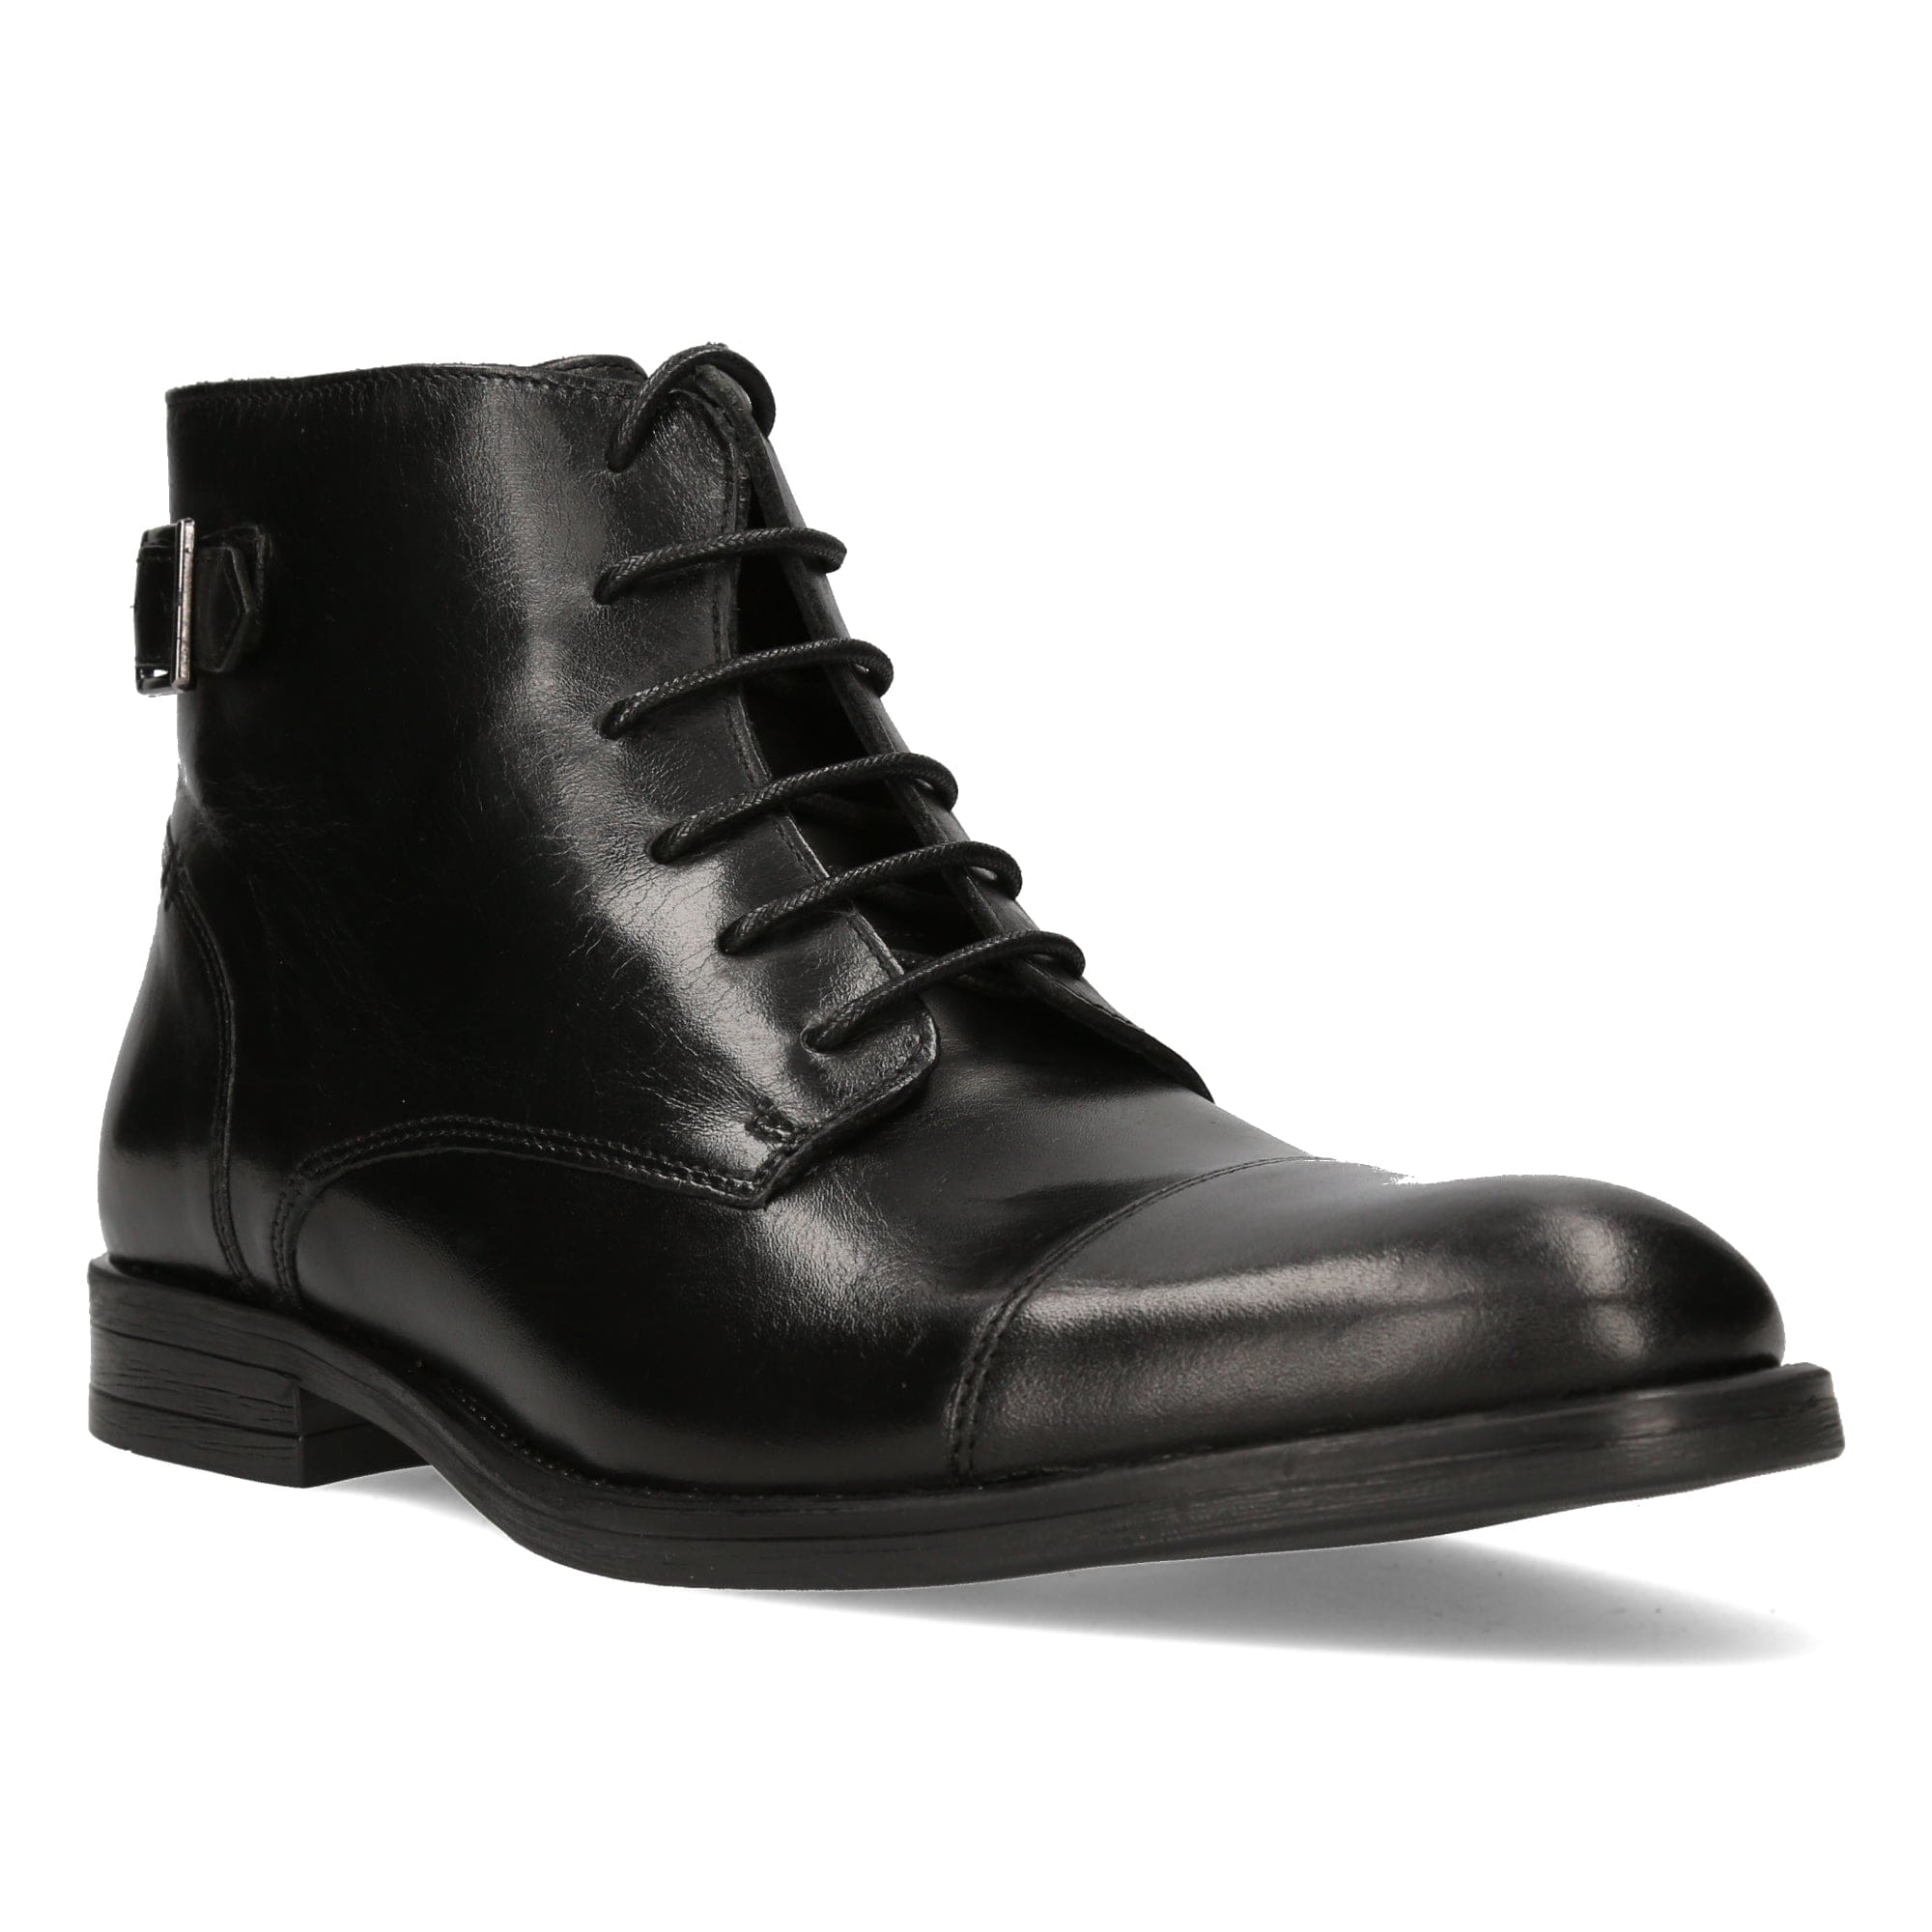 Shoes Men LOUIS - Boots